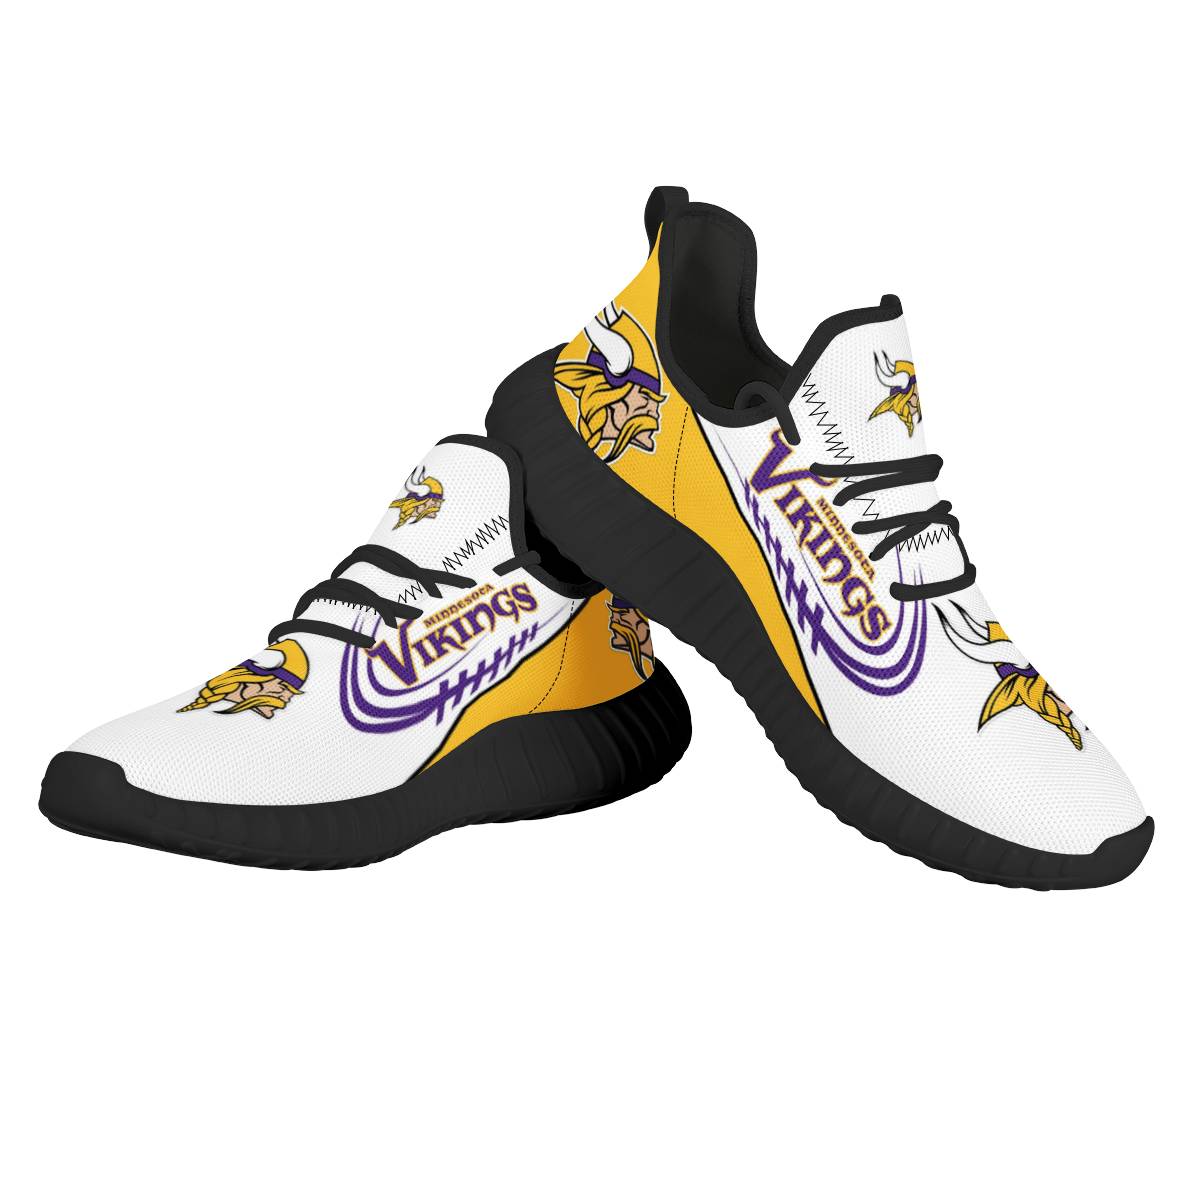 Men's NFL Minnesota Vikings Mesh Knit Sneakers/Shoes 002